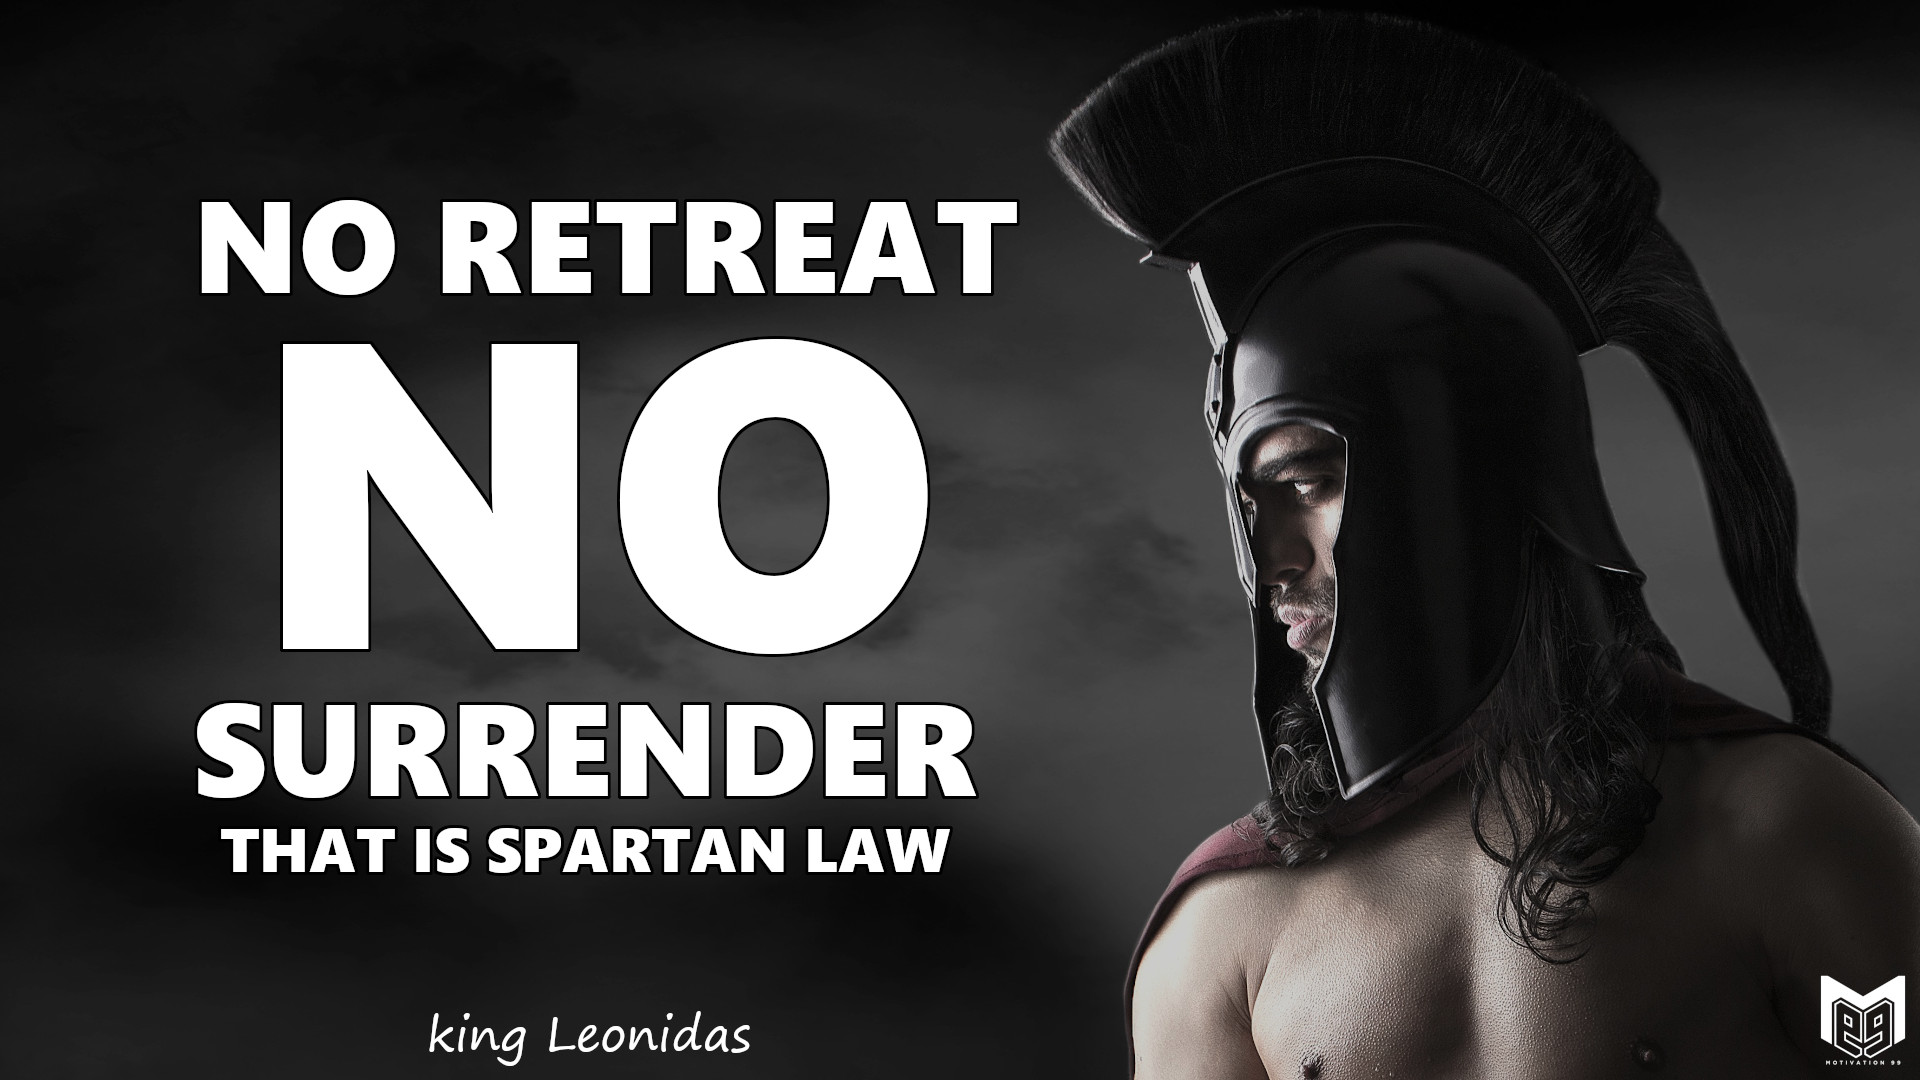 NO RETREAT, NO SURRENDER. THAT IS SPARTAN LAW